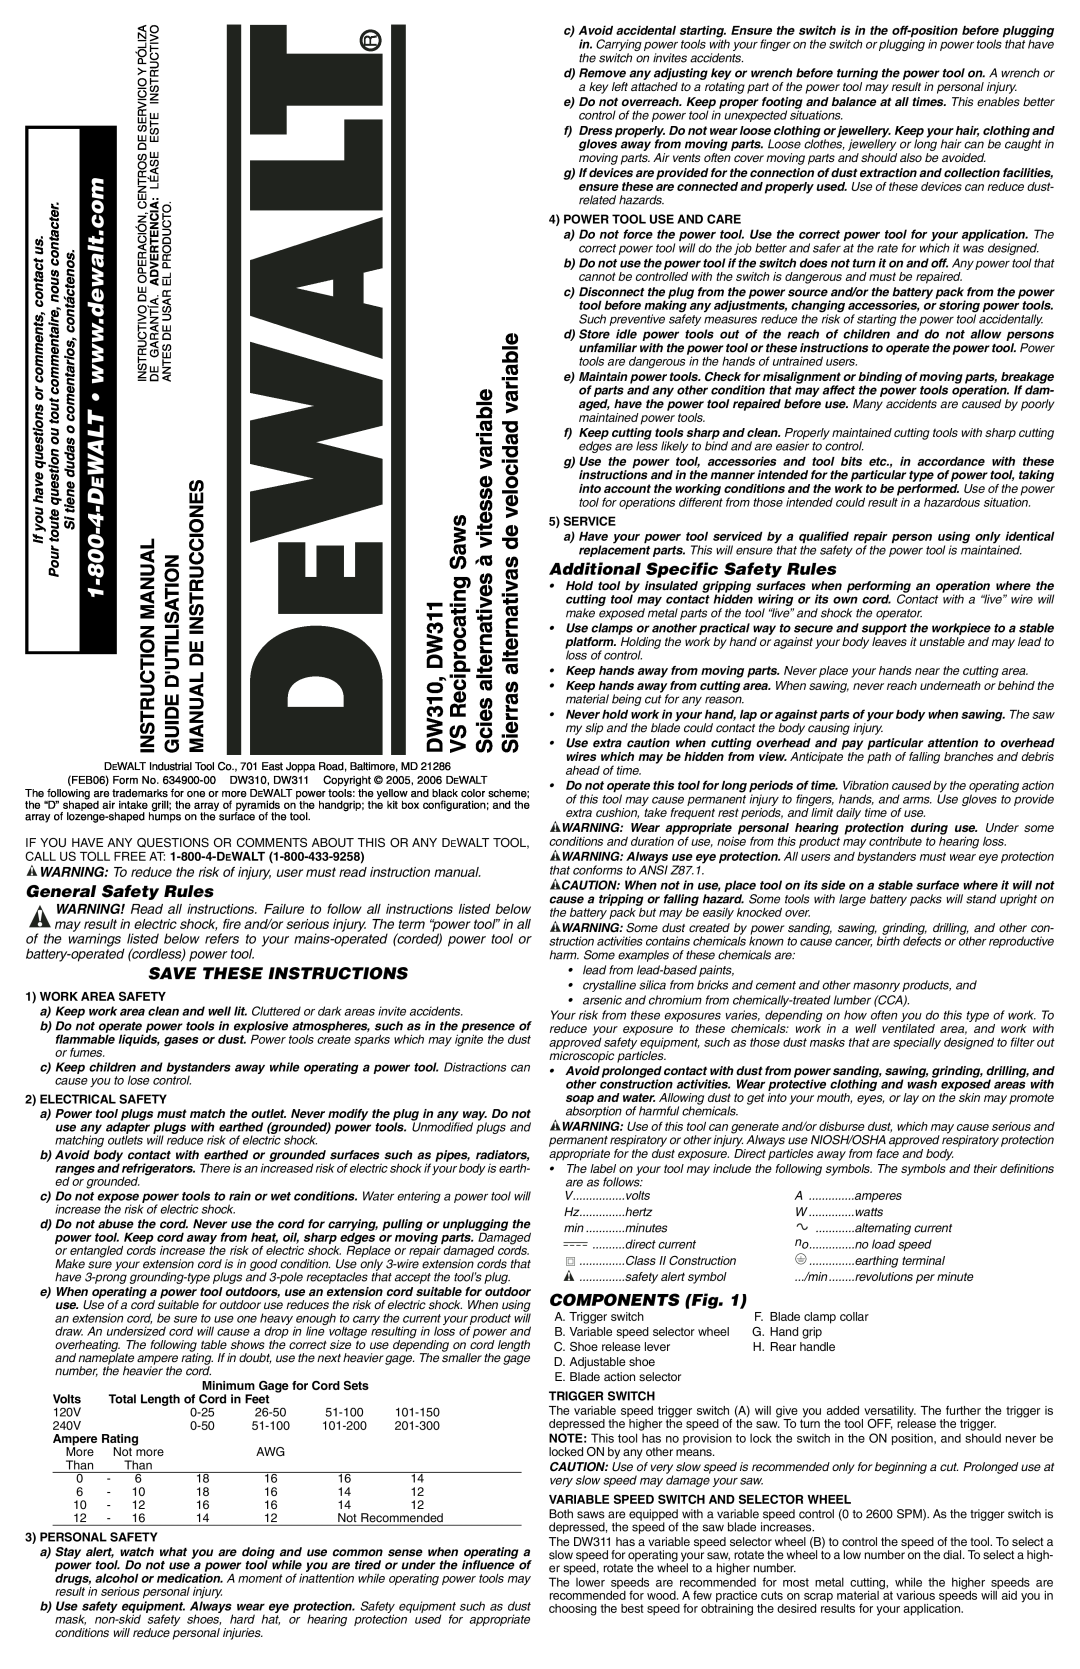 DeWalt DW310K manual 